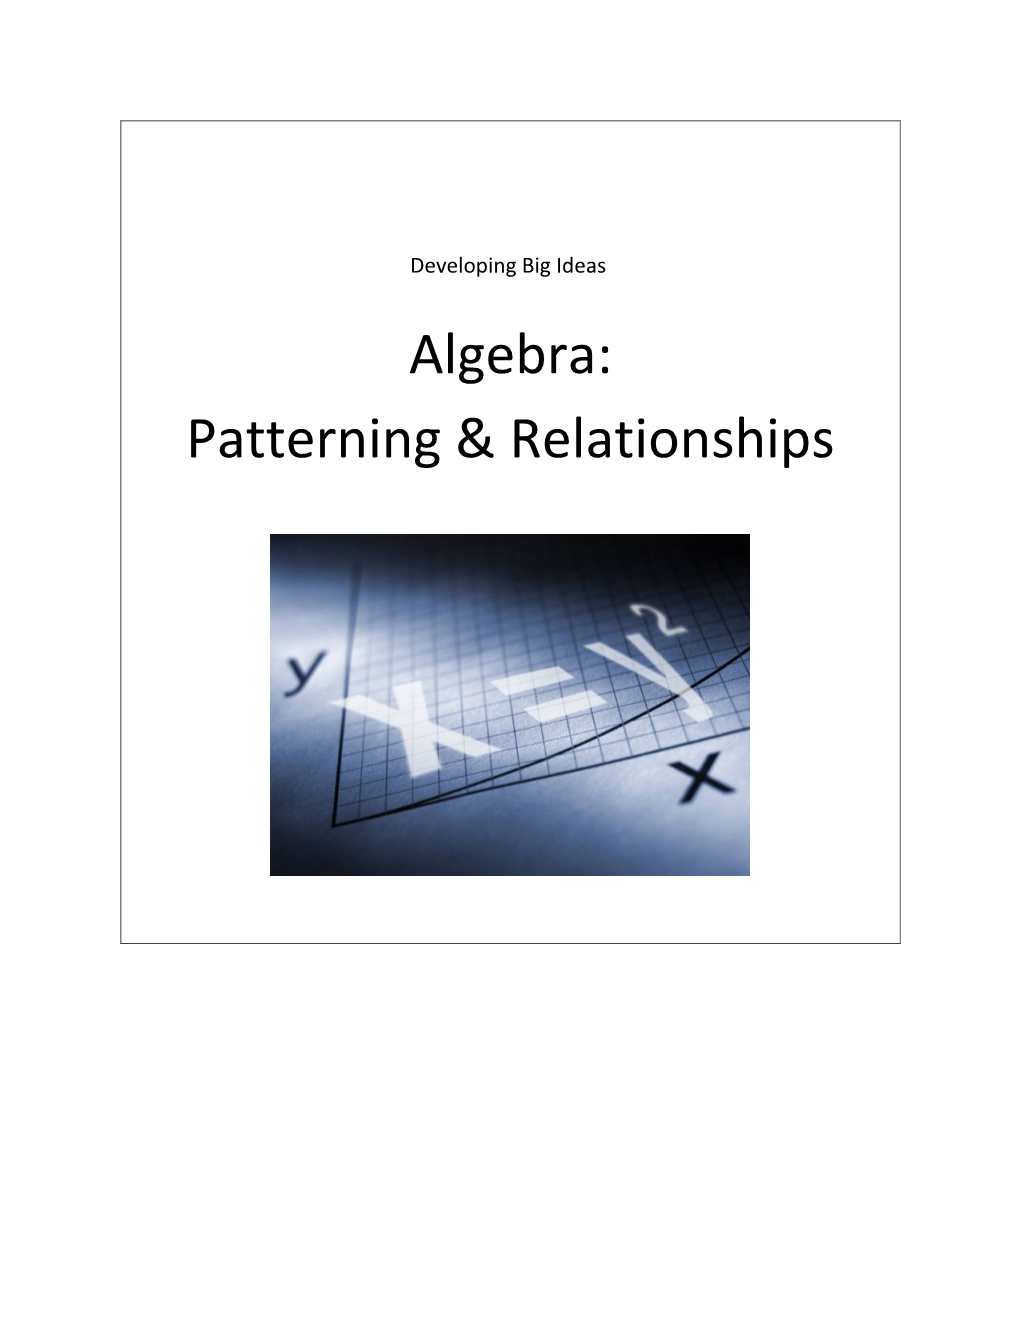 Algebra (Patterning & Relationships)Assessment